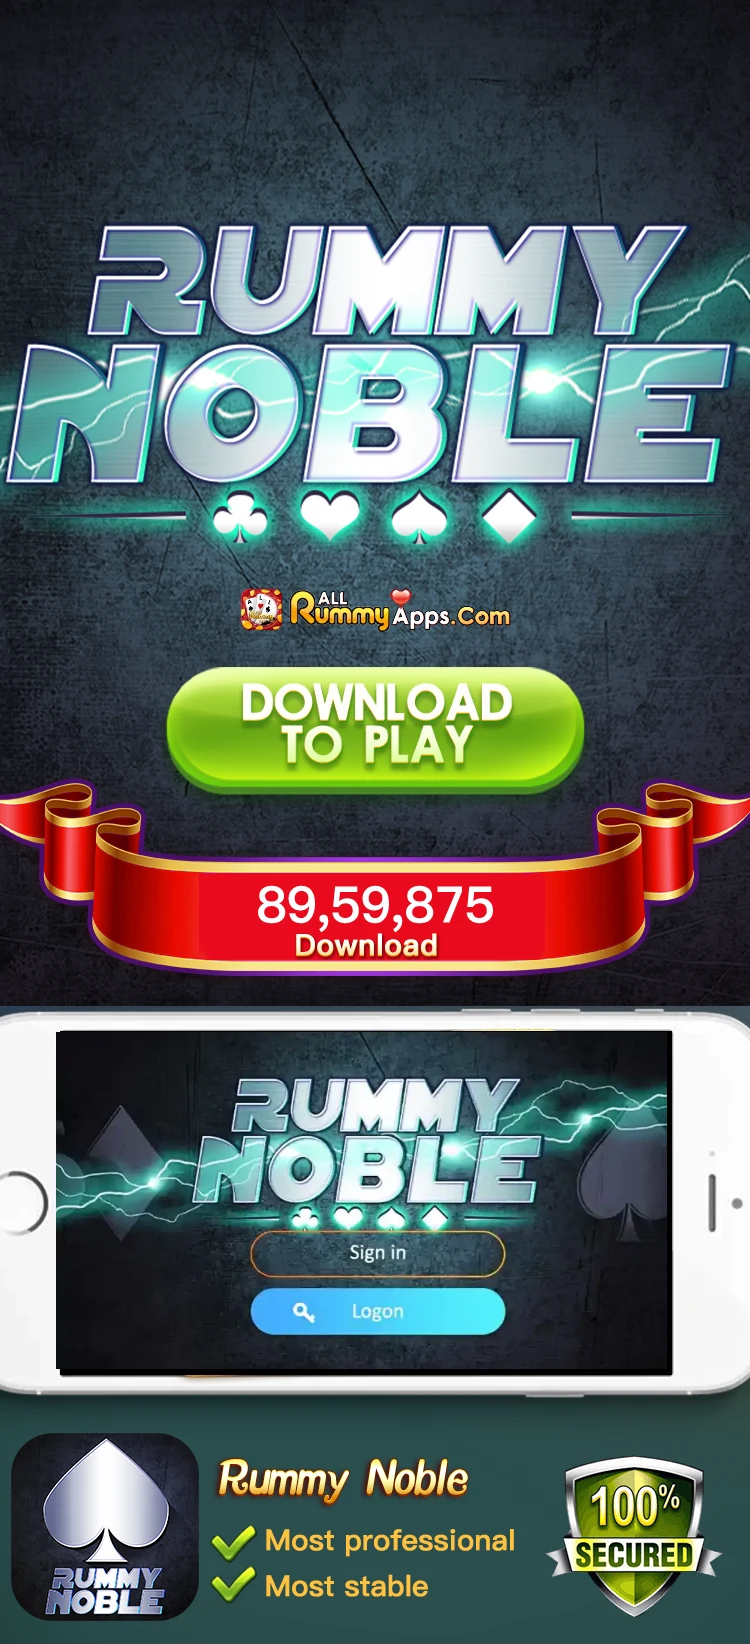 New Rummy Noble APK Download Top Rummy App